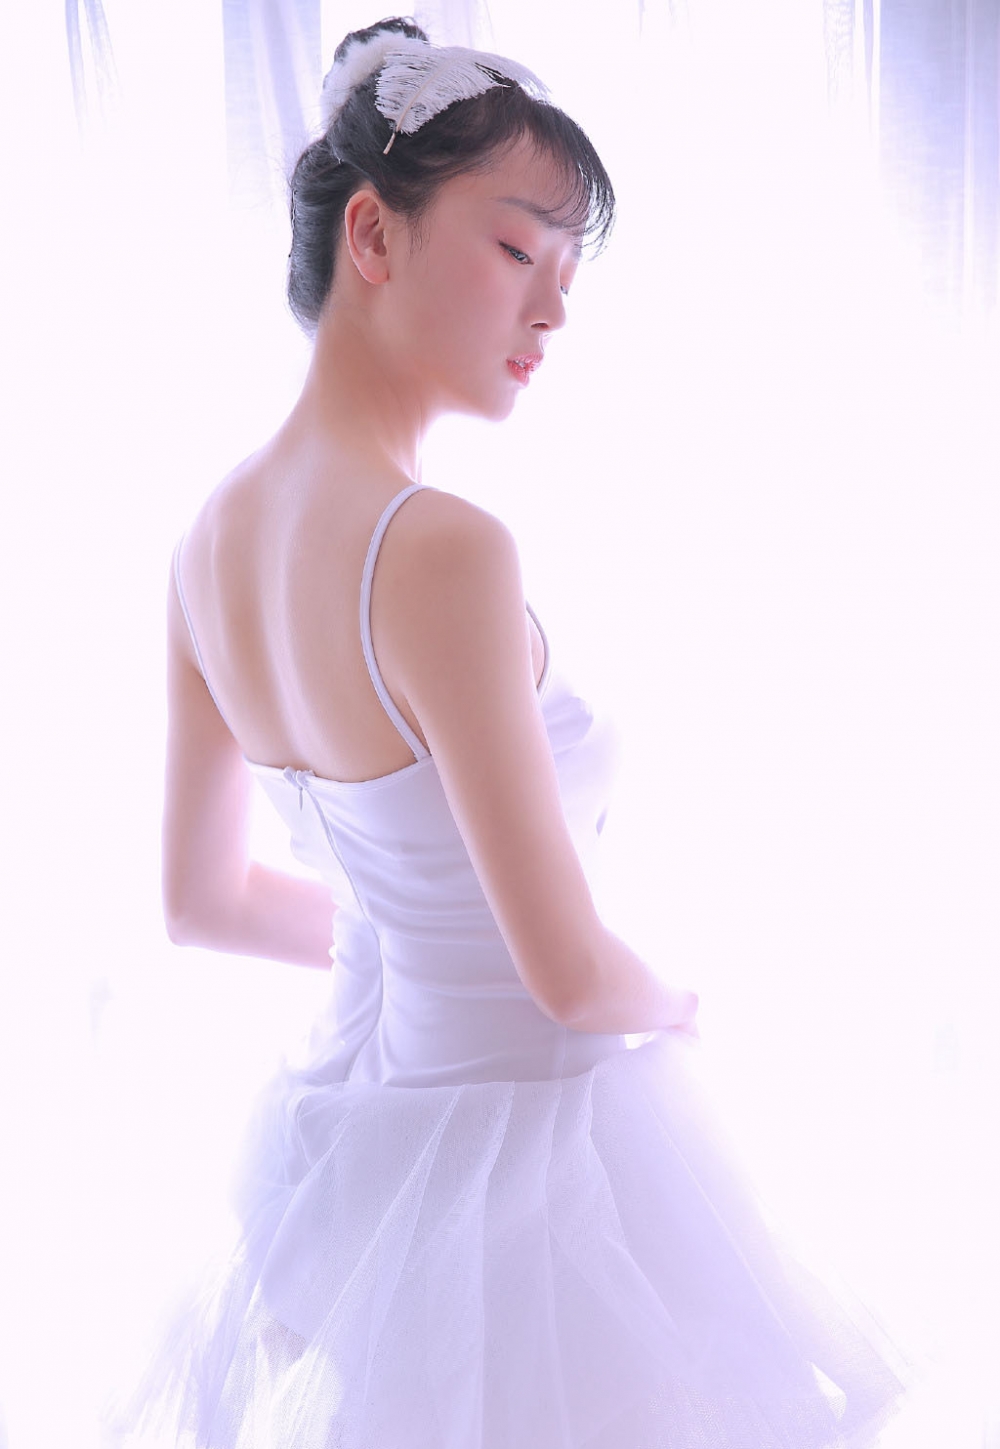 阳光下的芭蕾舞美女白皙大长腿光滑柔嫩图片